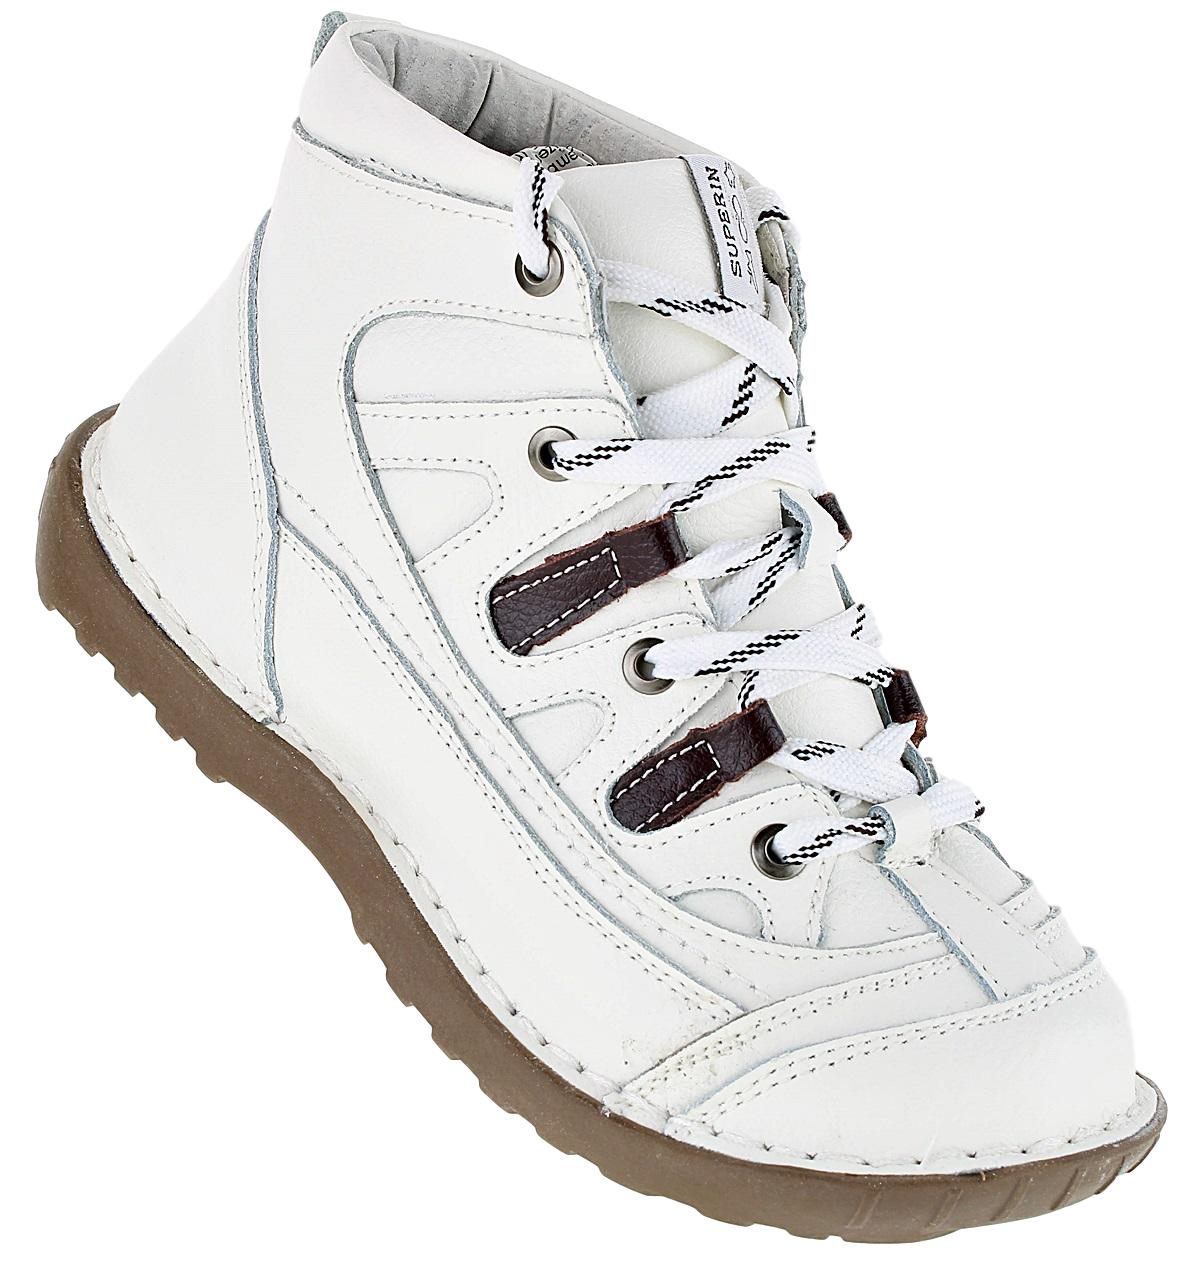 Damenschuhe Winterschuhe Sneakers Boots Stiefelette Outdoor Schuhe Hochschaft 